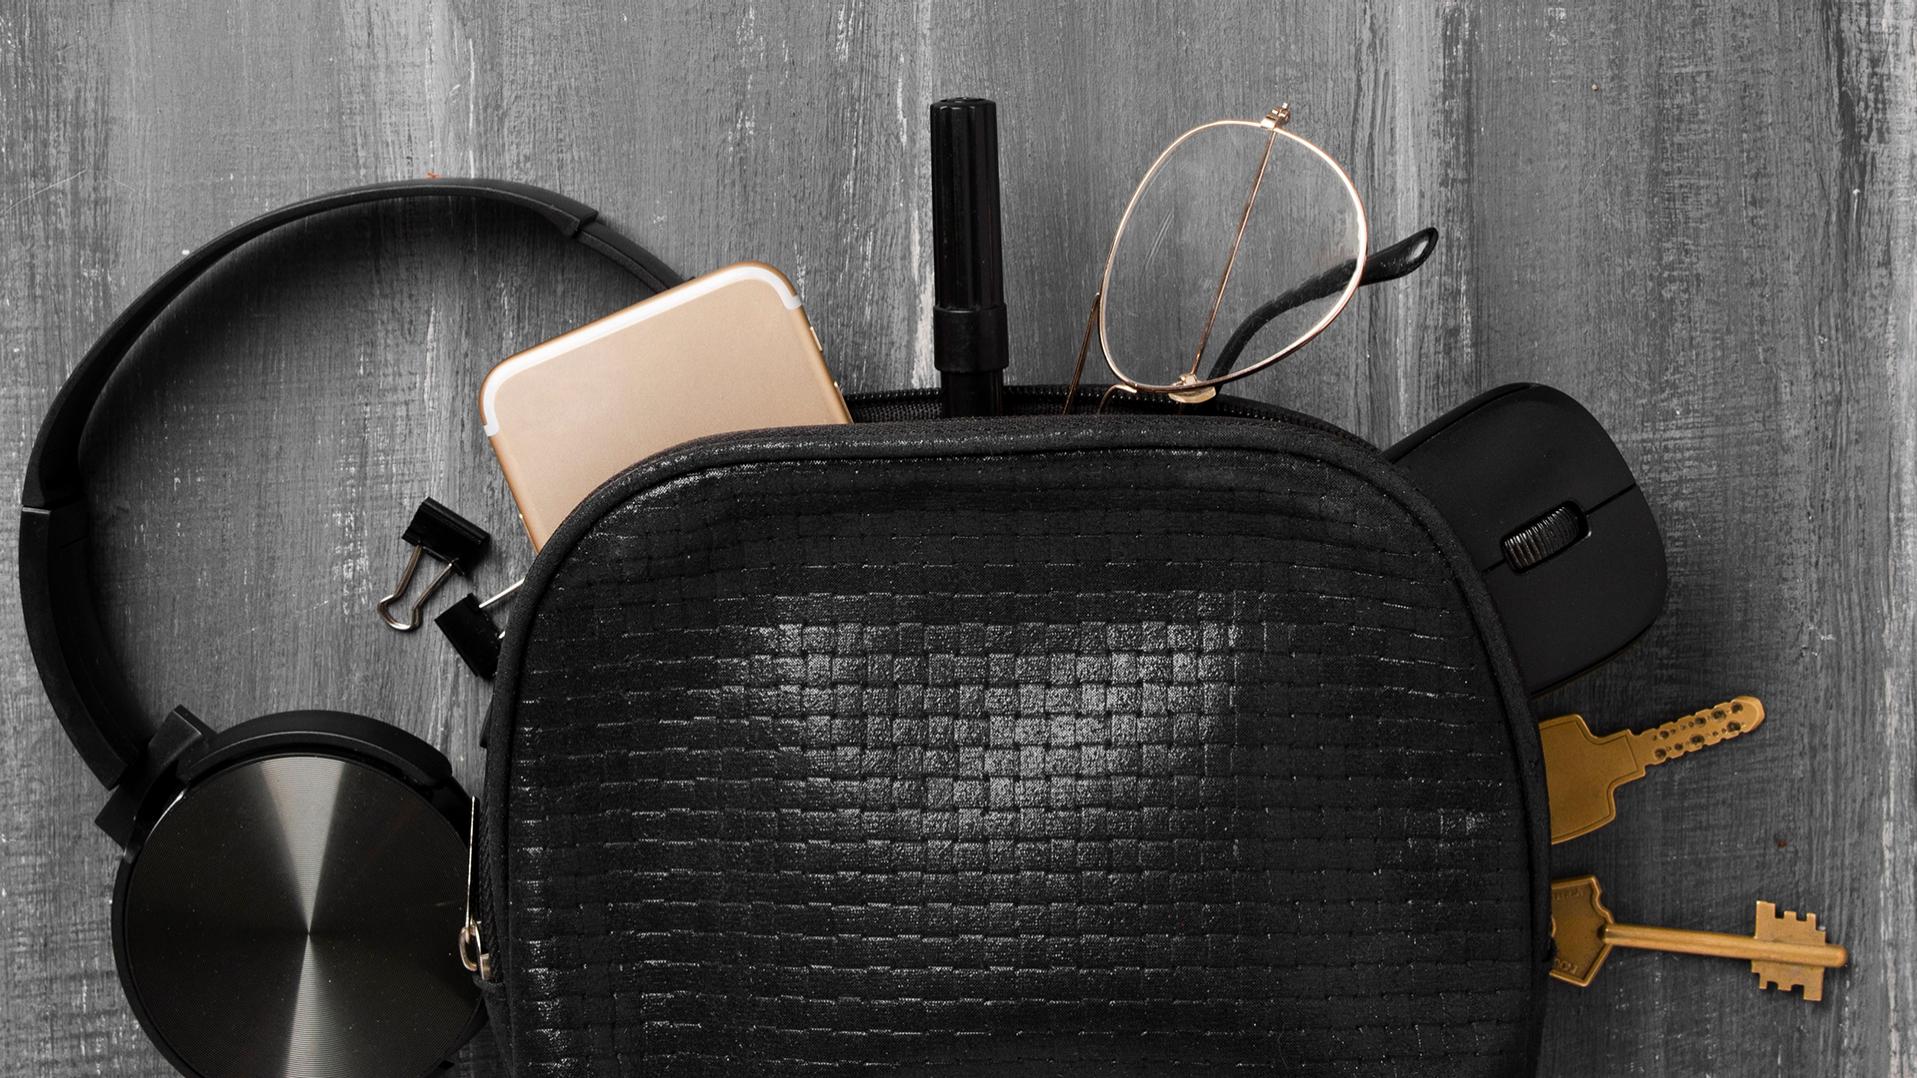 Eine kleine schwarze Tasche, aus der Kopfhörer, ein Handy, Schlüssel, Büroklammern, ein Stift, eine PC-Maus und eine Brille mit ZEISS Brillengläsern mit DuraVision Beschichtung herausgerutscht sind und nun teilweise auf dem grauen Boden liegen.